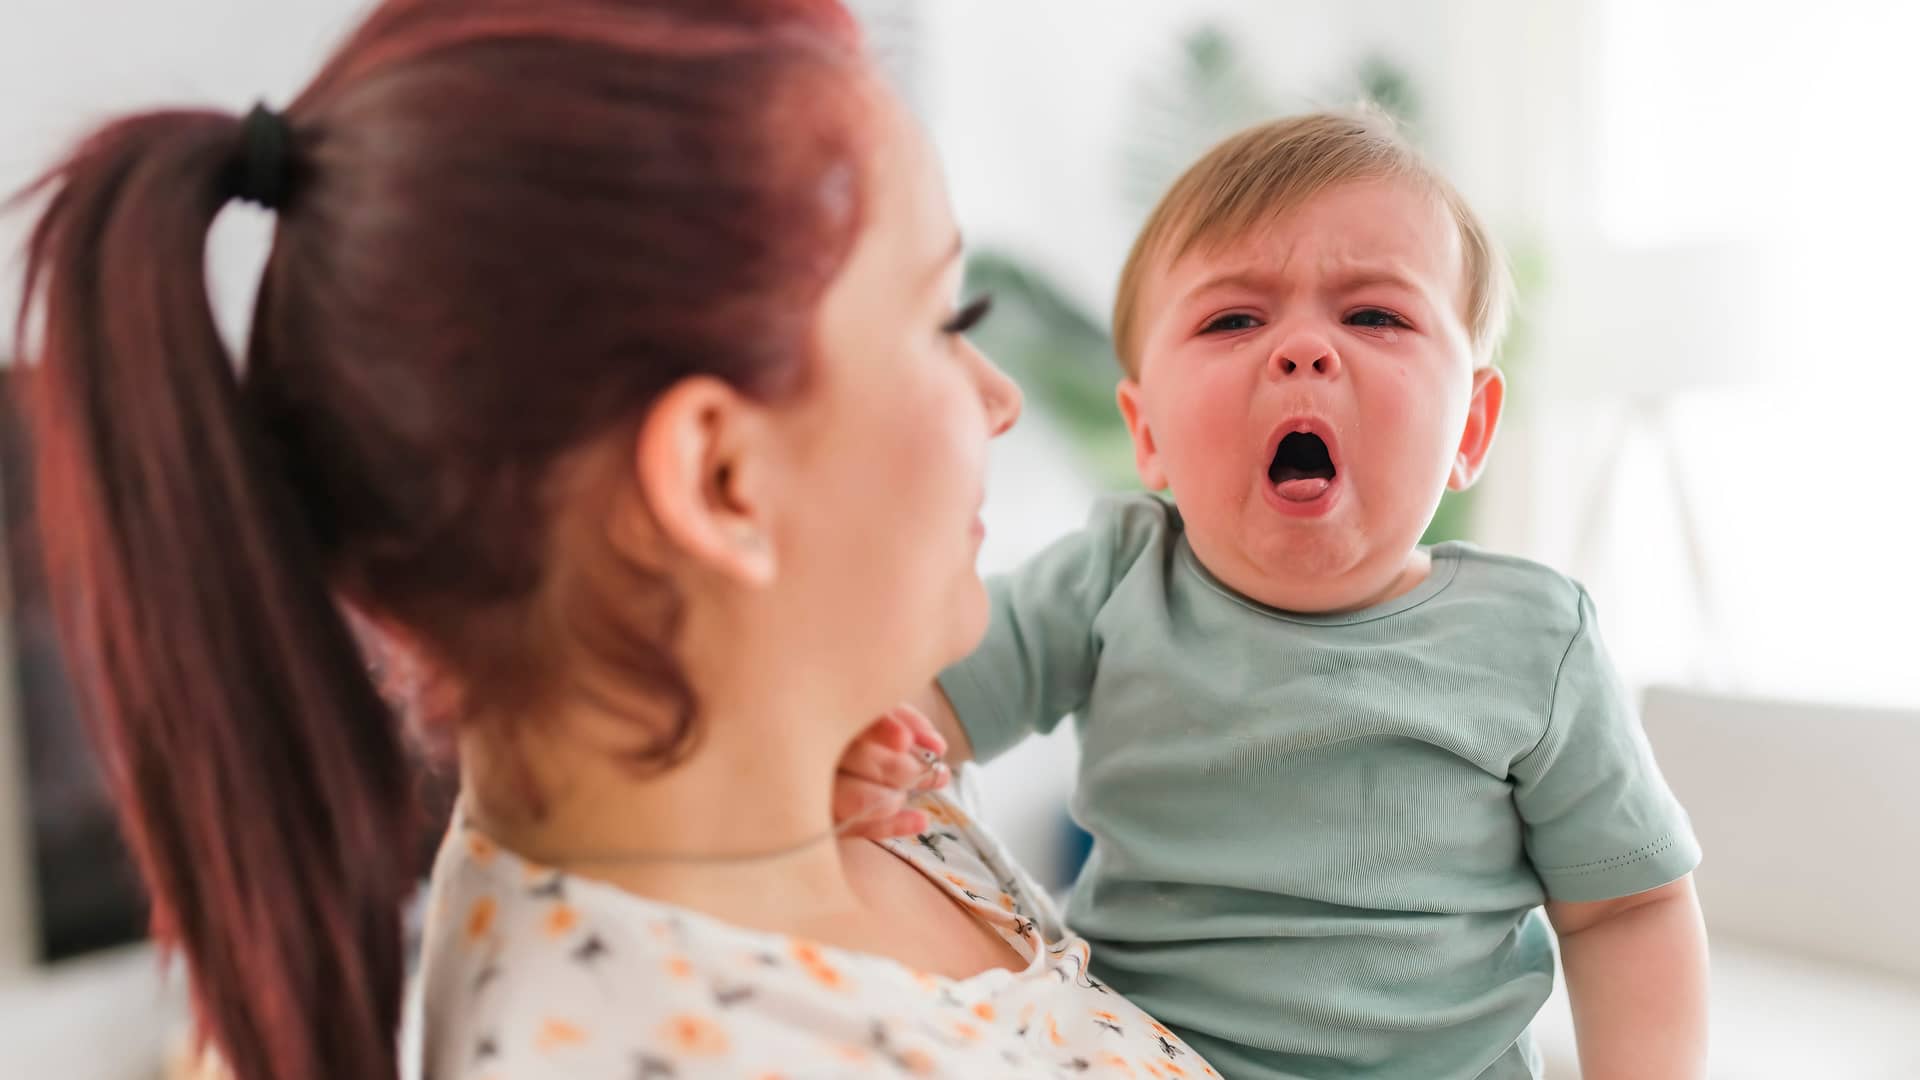 Tos en bebés: tipos y remedios caseros para aliviarla